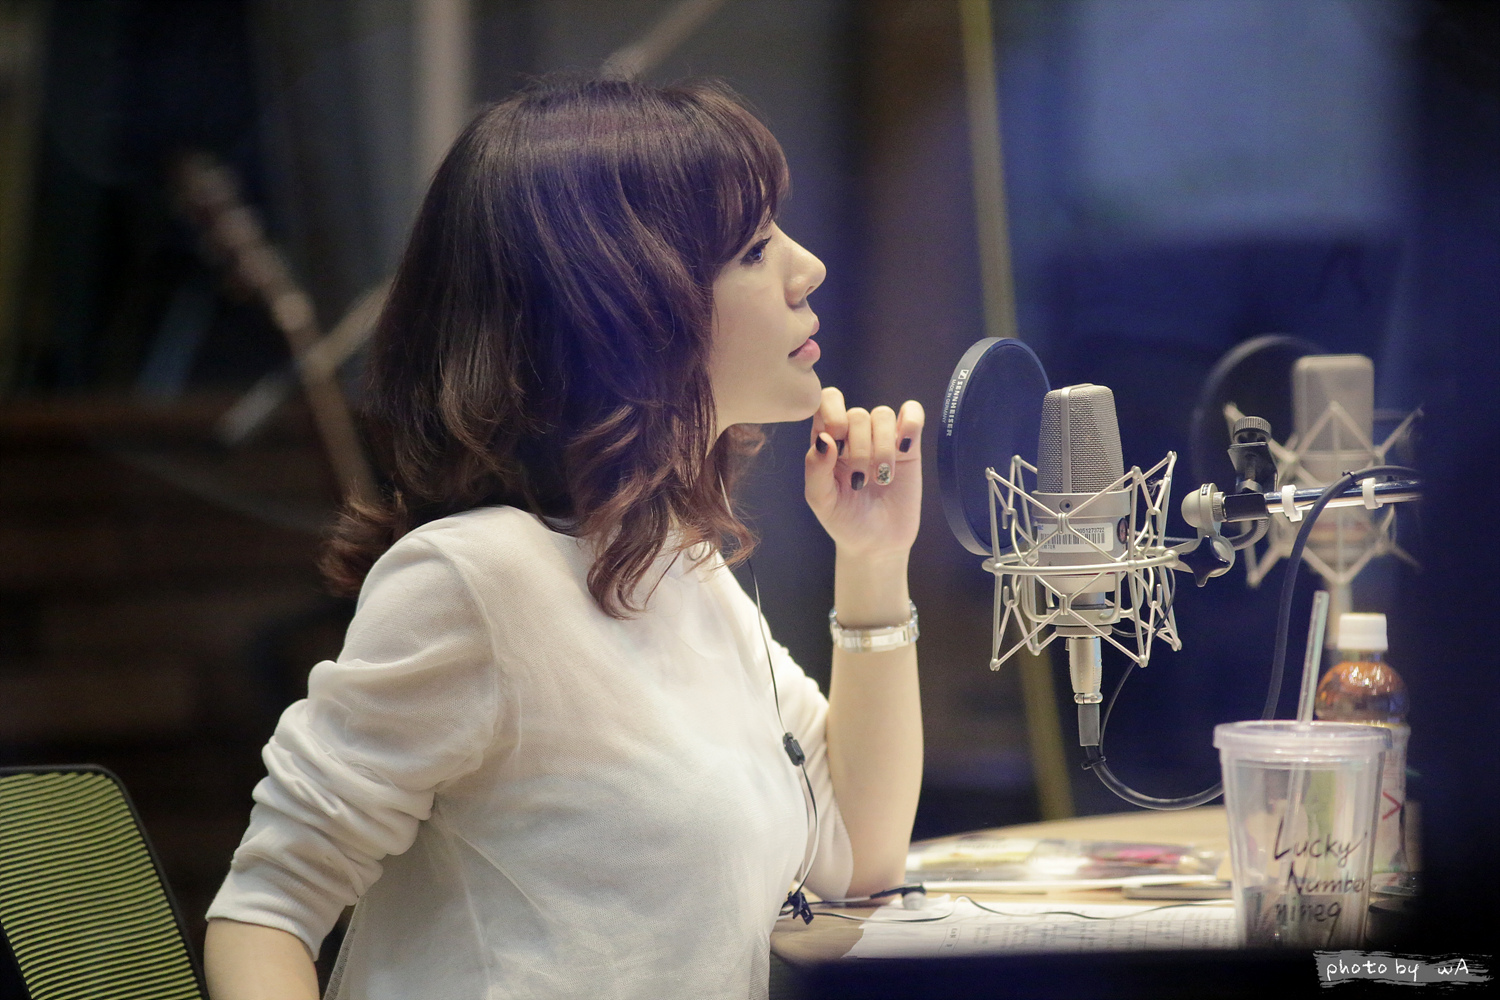 [OTHER][06-05-2014]Hình ảnh mới nhất từ DJ Sunny tại Radio MBC FM4U - "FM Date" - Page 15 2653D53553FDFF3B0C4FD6